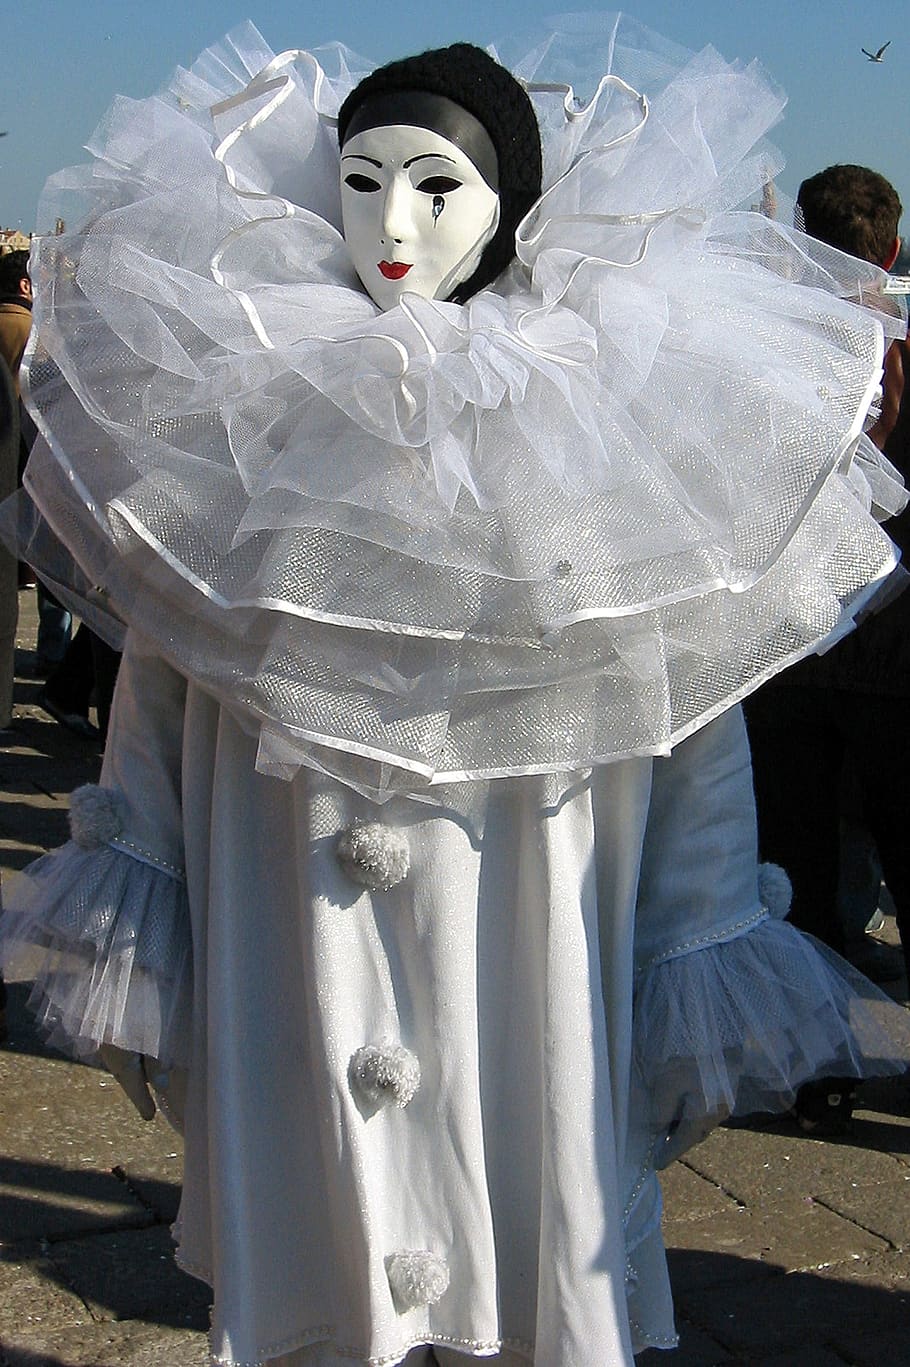 carnaval de venecia, carnaval, venecia, máscara, italia, disfraz, pierrot, color blanco, mujeres, representación humana